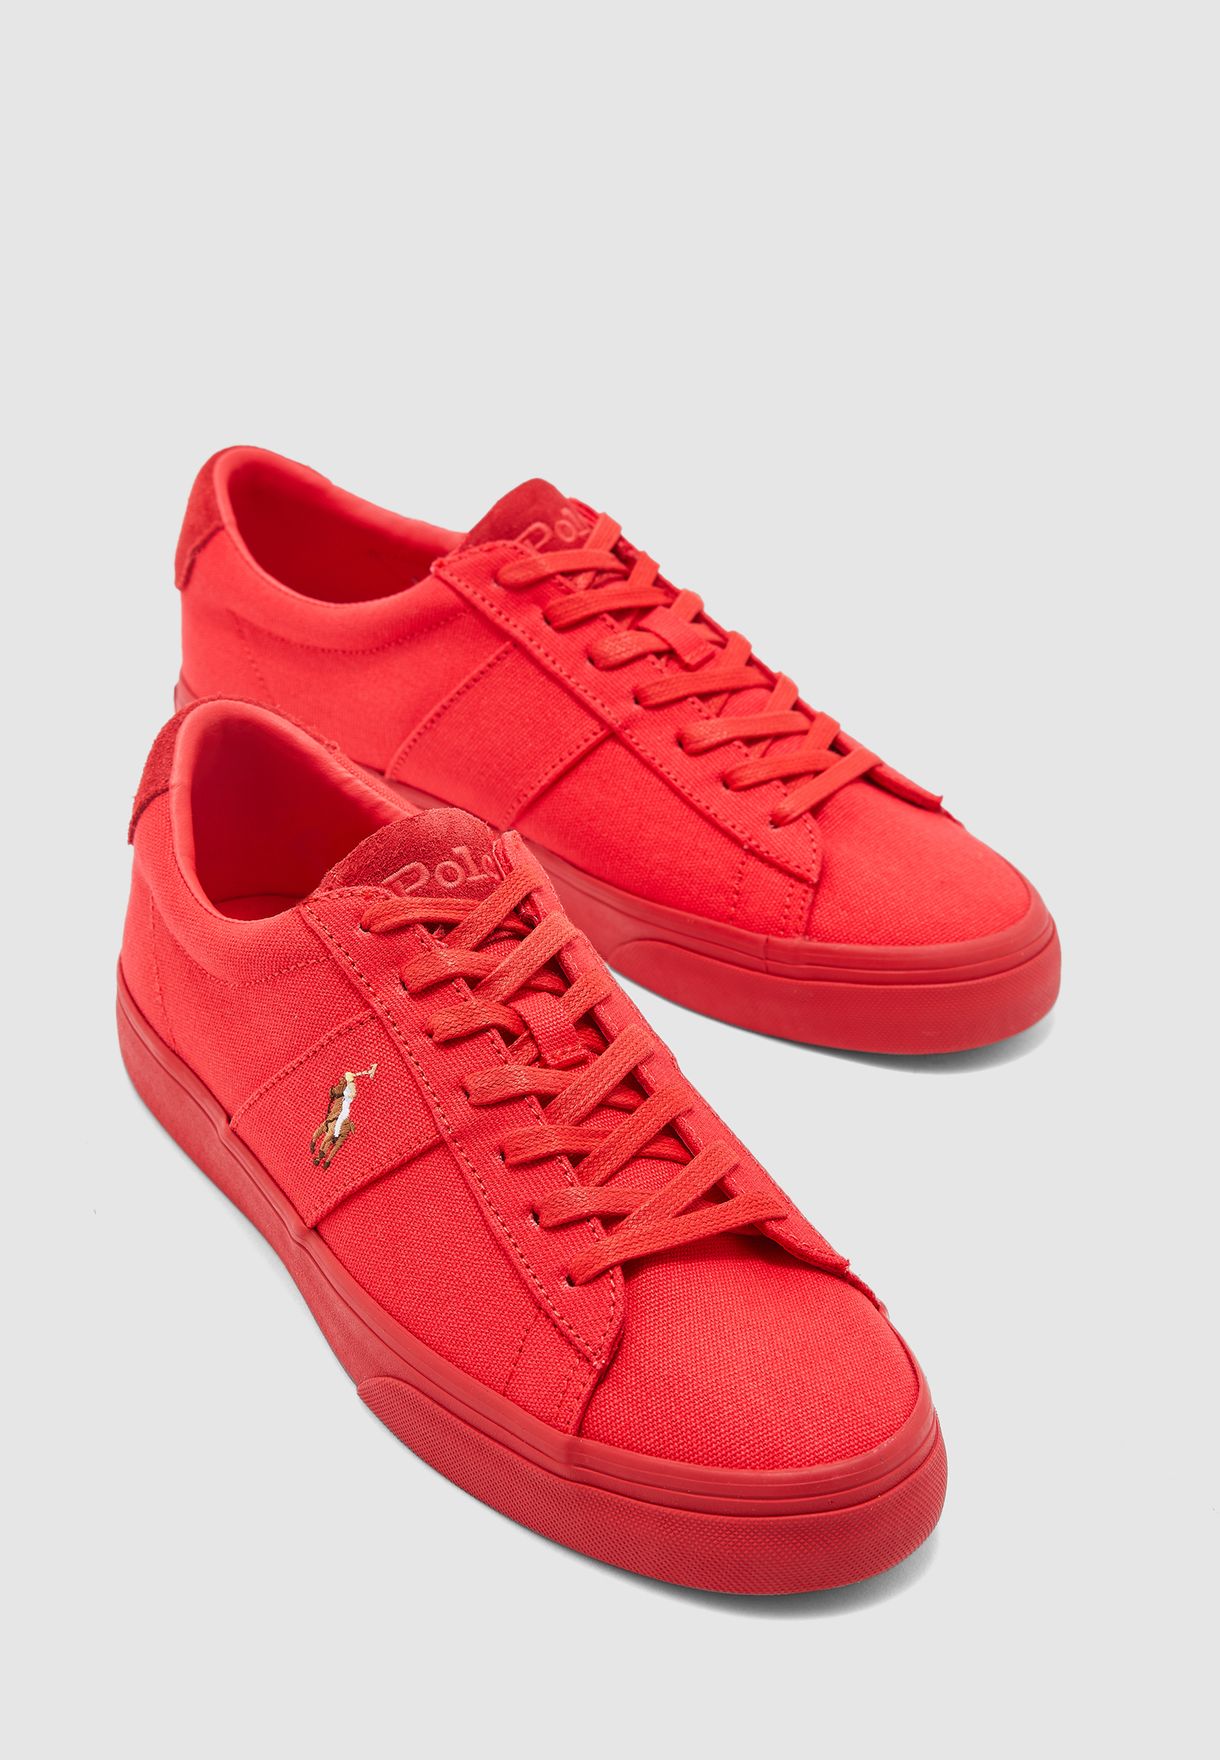 polo ralph lauren red sneakers